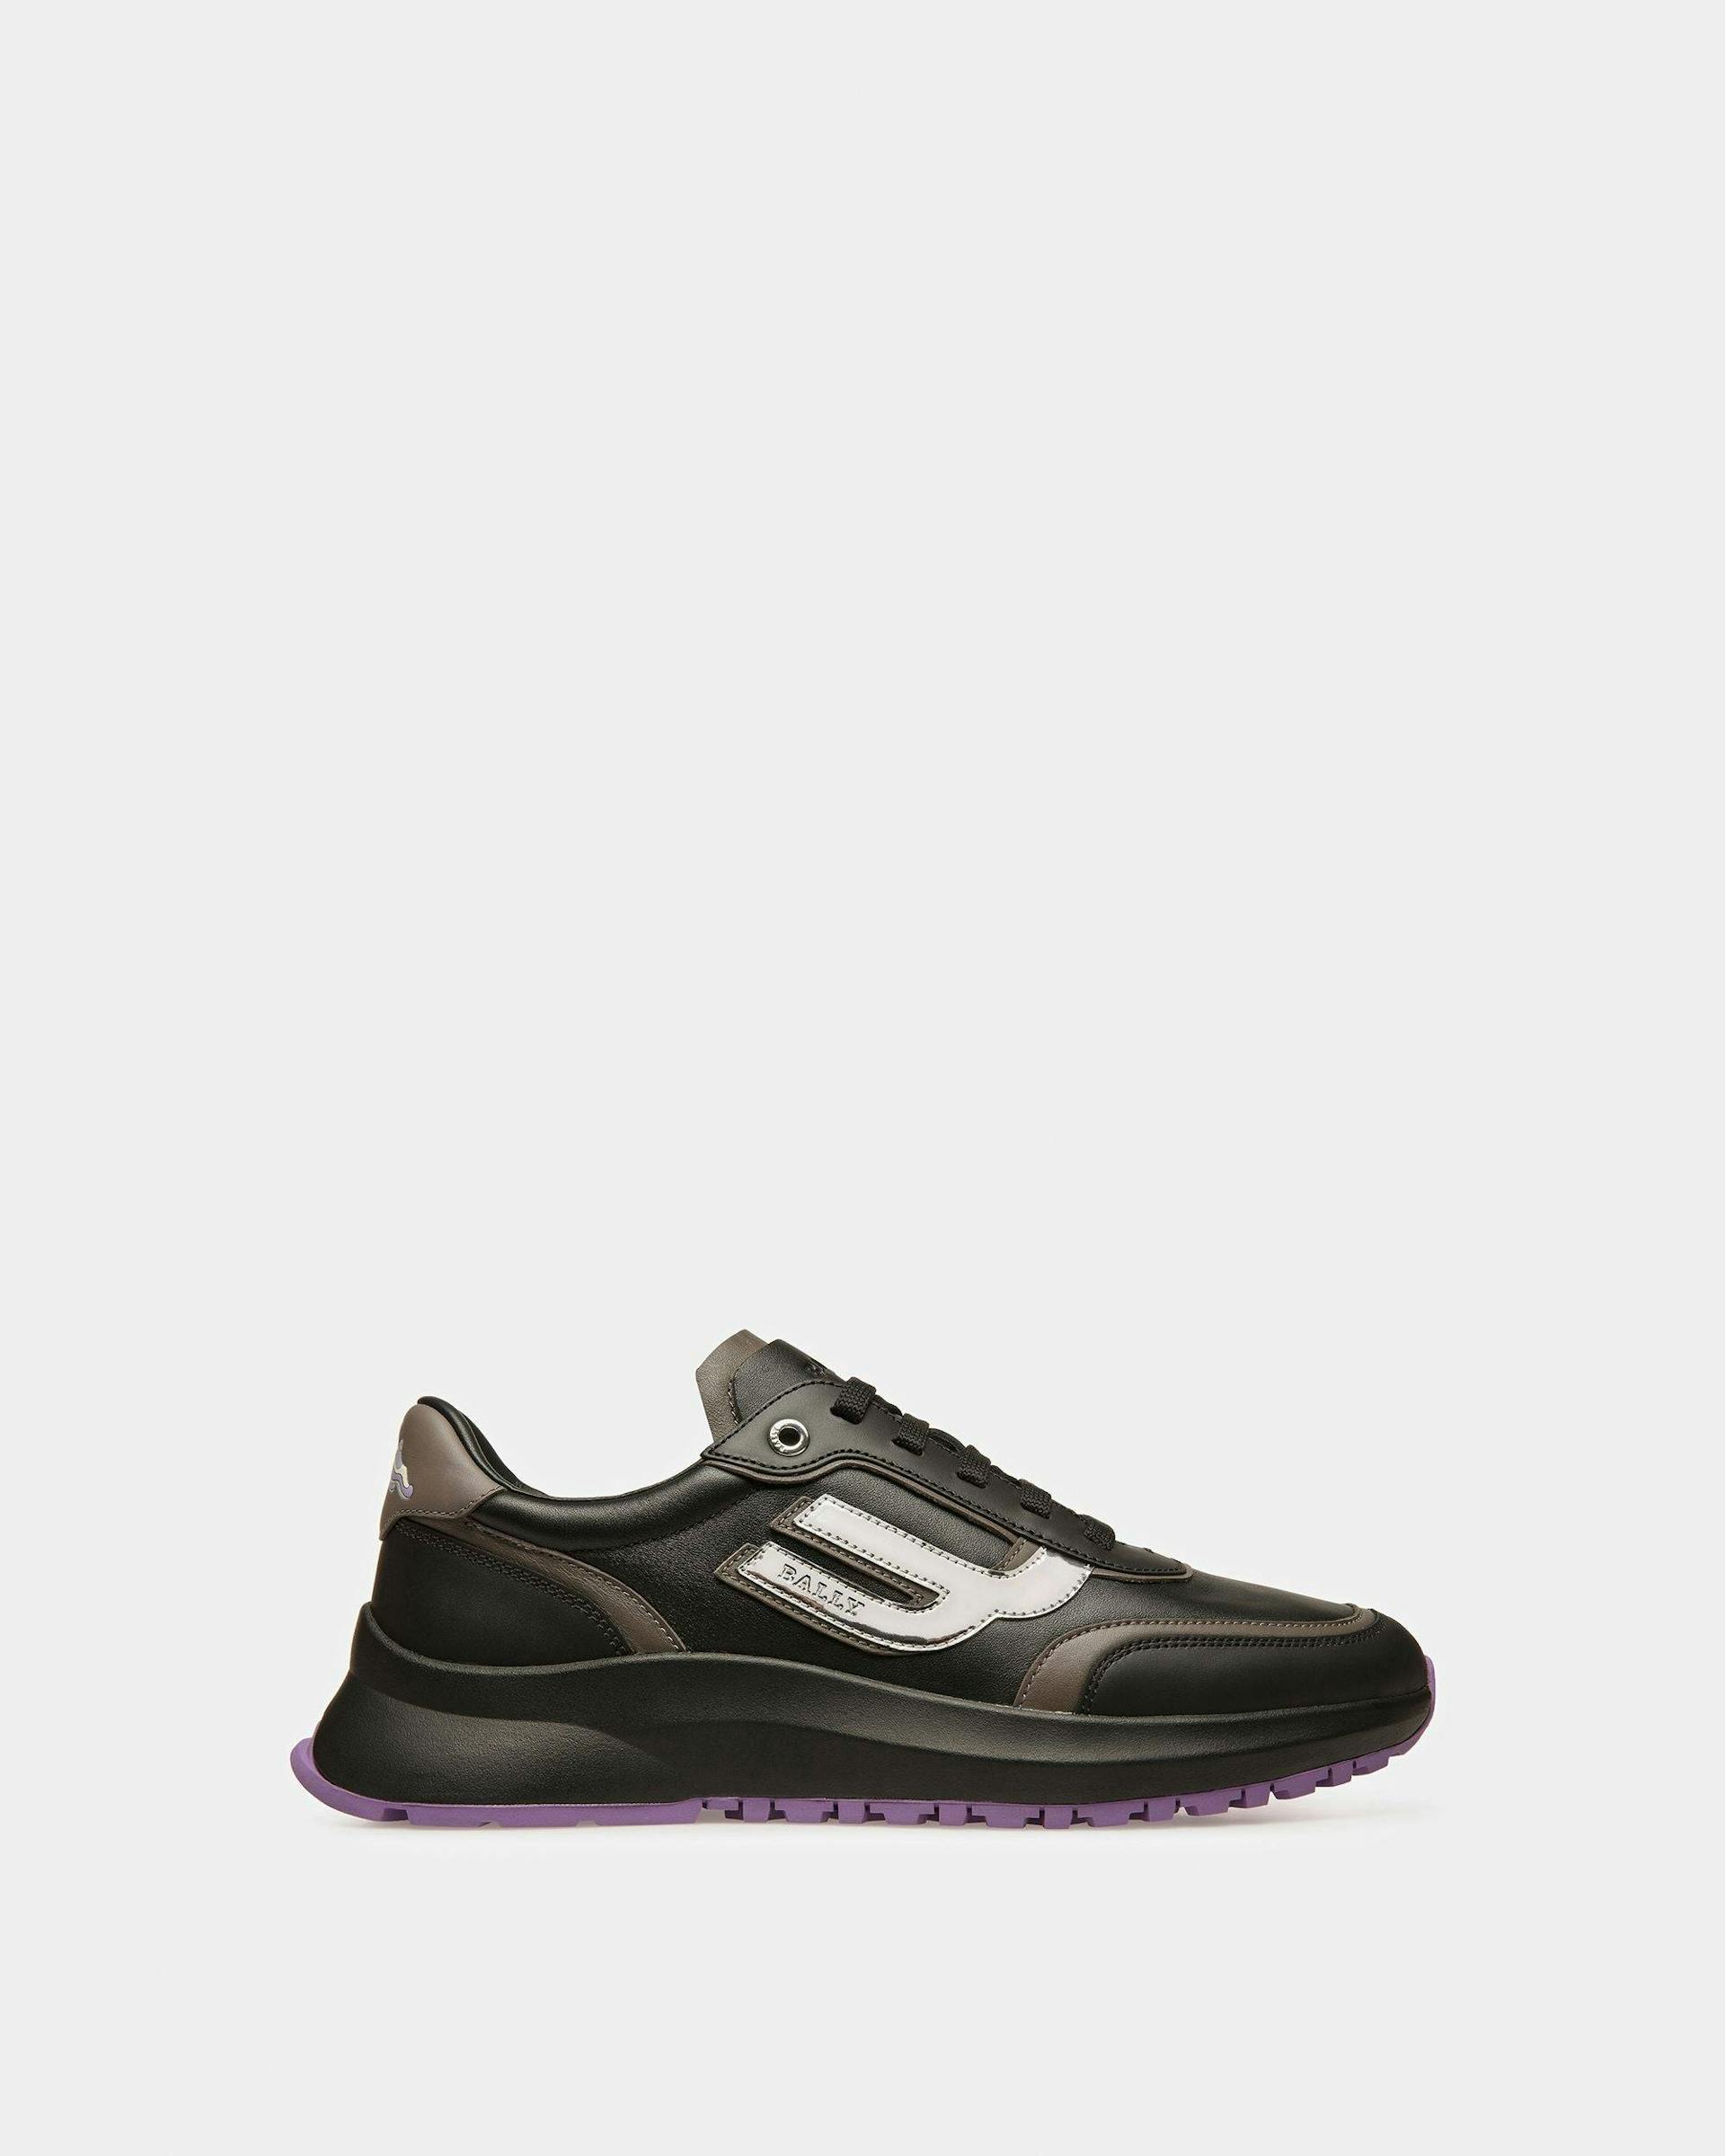 Demmy Sneaker In Pelle Nera E Antracite - Uomo - Bally - 01